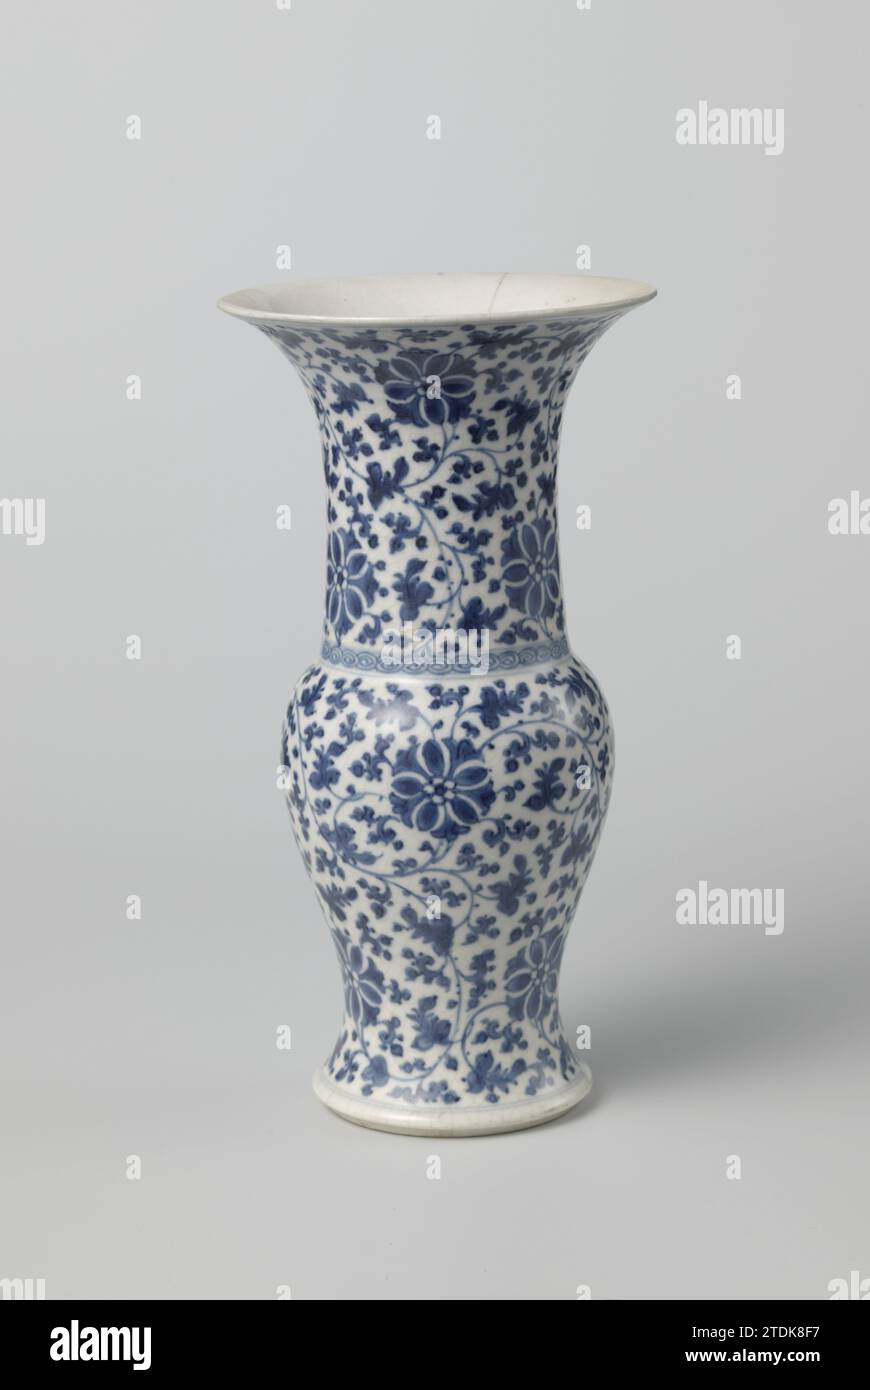 Vase balustervase avec motif floral stylisé, anonyme, c. 1800 - c. 1899 vase en forme de balus en porcelaine tendre (pâte tendre) avec col large et droit et bouche en forme de trompette, peint en bleu sous-laque. Le vase est recouvert de vignes de fleurs stylisées ; à la base du cou un lien avec des formes en spirale. Marqué sur le fond avec la marque à quatre personnages de Keizer Chenghua. L'arête a été cassée. Bleu blanc. Porcelaine de Chine. porcelaine tendre. glaçage. Cobalt (minéral) peinture / vitrification vase en forme de balus en porcelaine tendre (pâte tendre) avec col large et droit et trompette-shap Banque D'Images